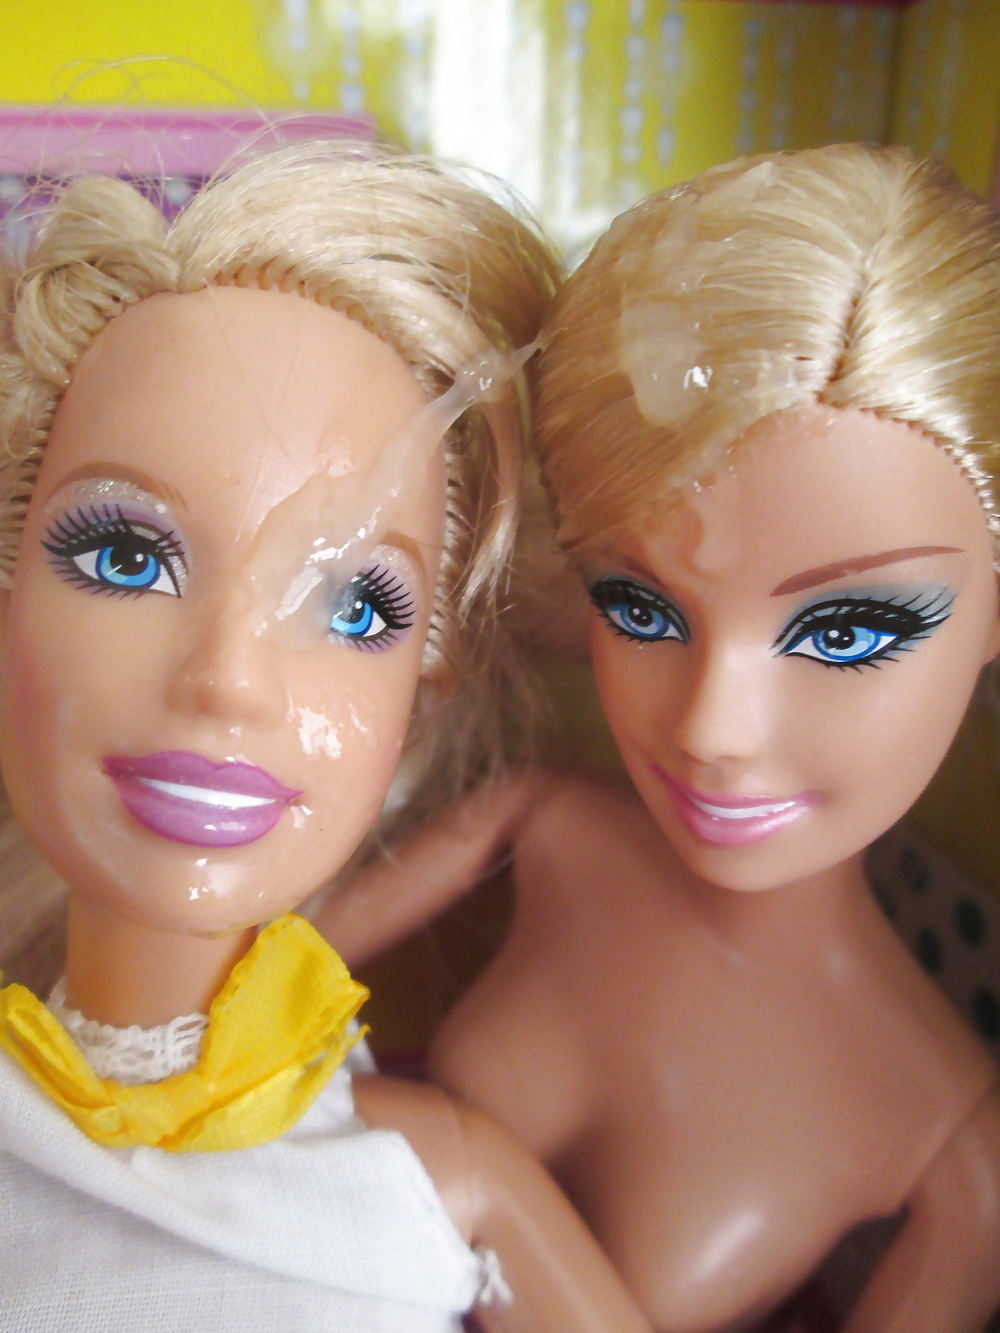 Doppel Barbie Schwestern Teilen Sich Einen Snack #40384068